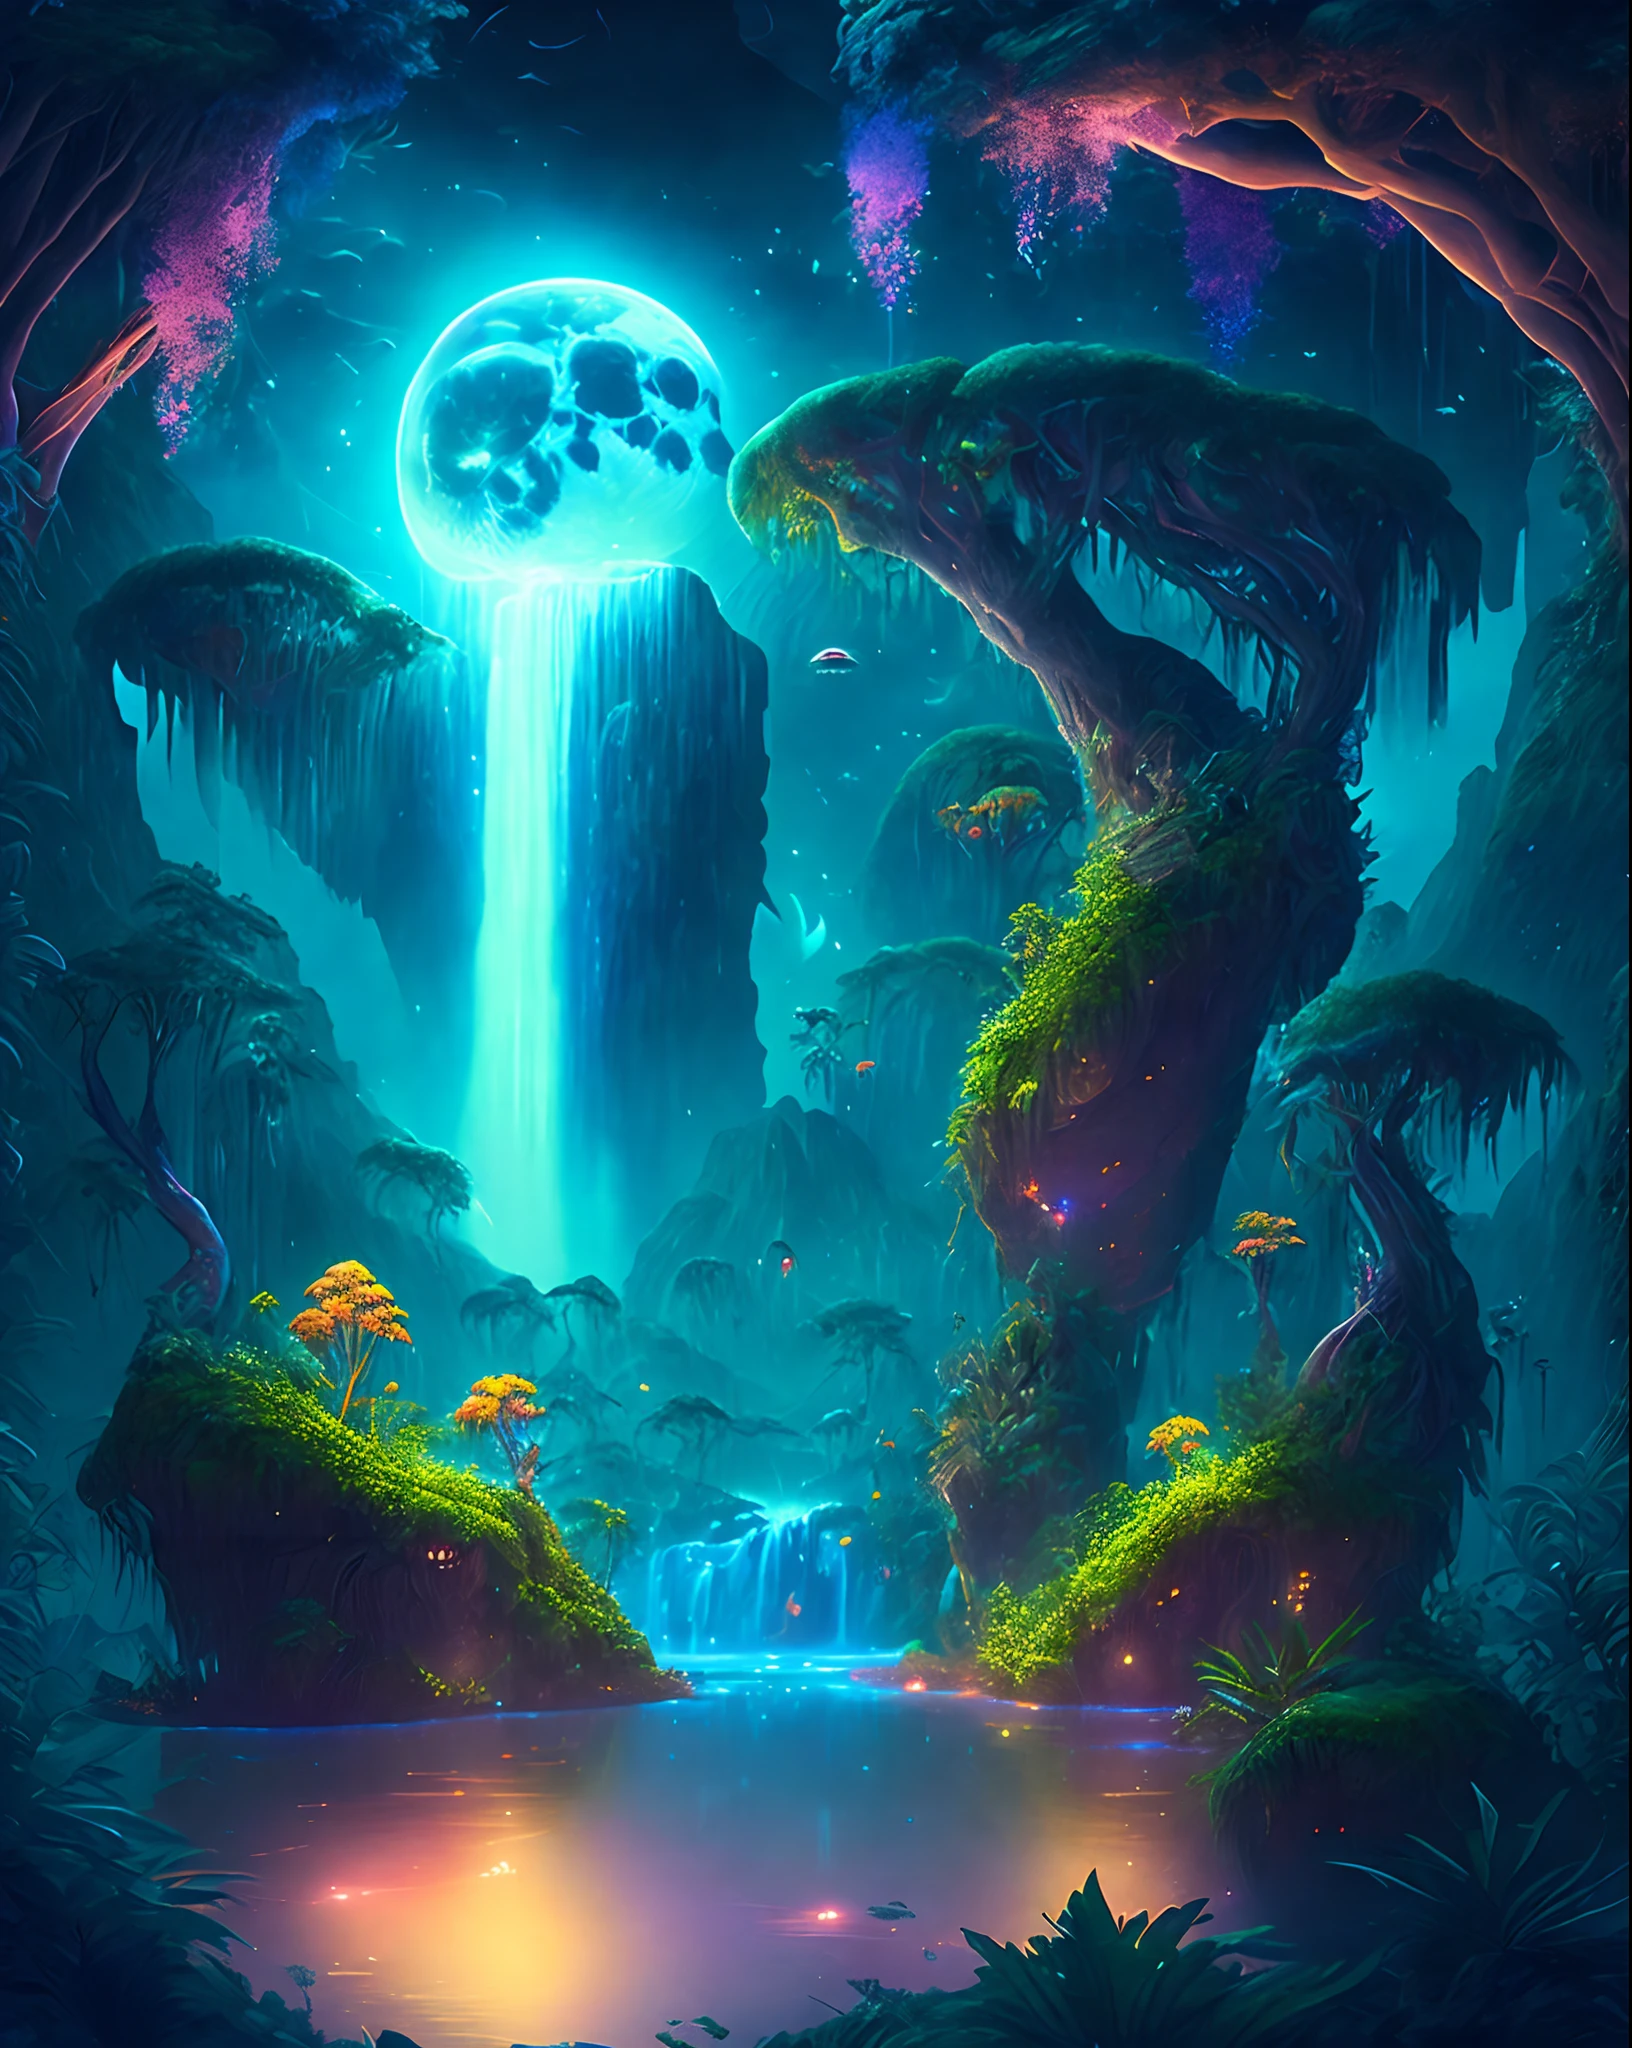 Очаровательные фантастические джунгли под лунным небом, массивные плавучие острова, покрытые пышной растительностью, каскадные водопады, и освещенные существа, парящие в ночи, цифровое произведение искусства